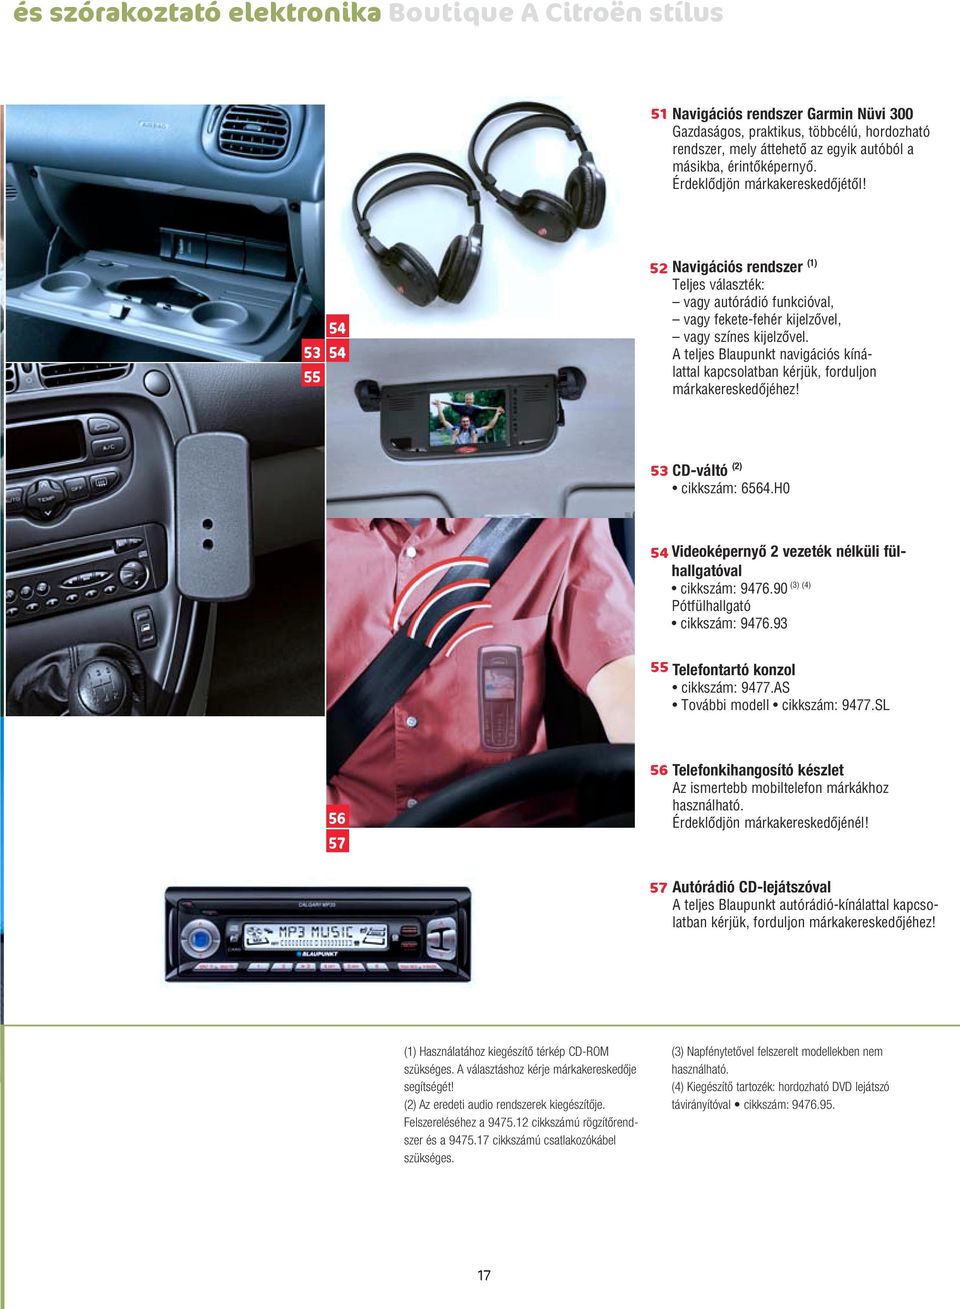 A teljes Blaupunkt navigációs kínálattal kapcsolatban kérjük, forduljon márkakereskedôjéhez! 53 CD-váltó (2) cikkszám: 6564.H0 54 Videoképernyô 2 vezeték nélküli fülhallgatóval (3) (4) cikkszám: 9476.